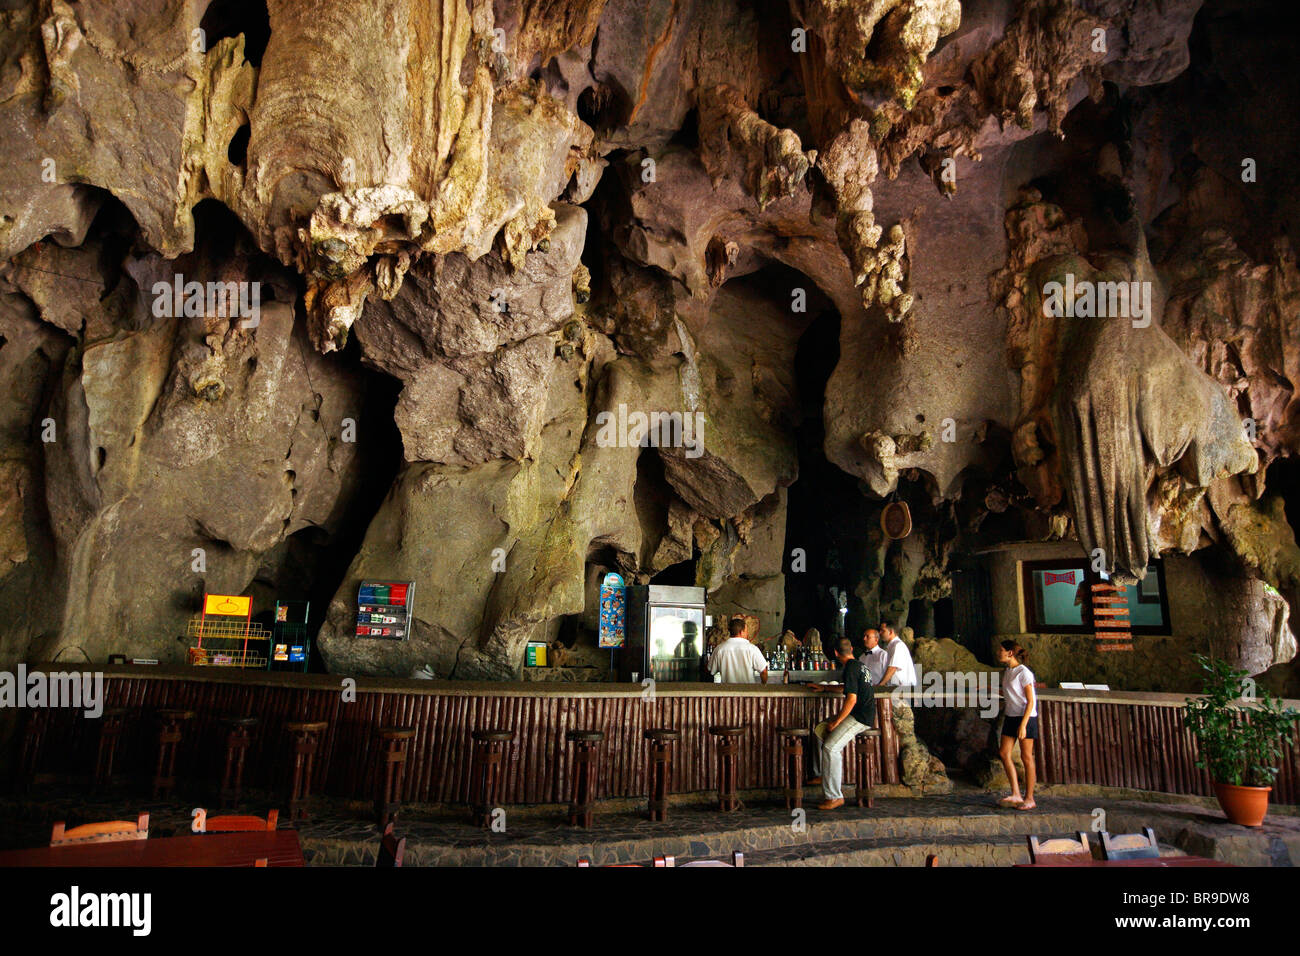 El Palenque Cave in the Vinales Valley Cuba. Stock Photo